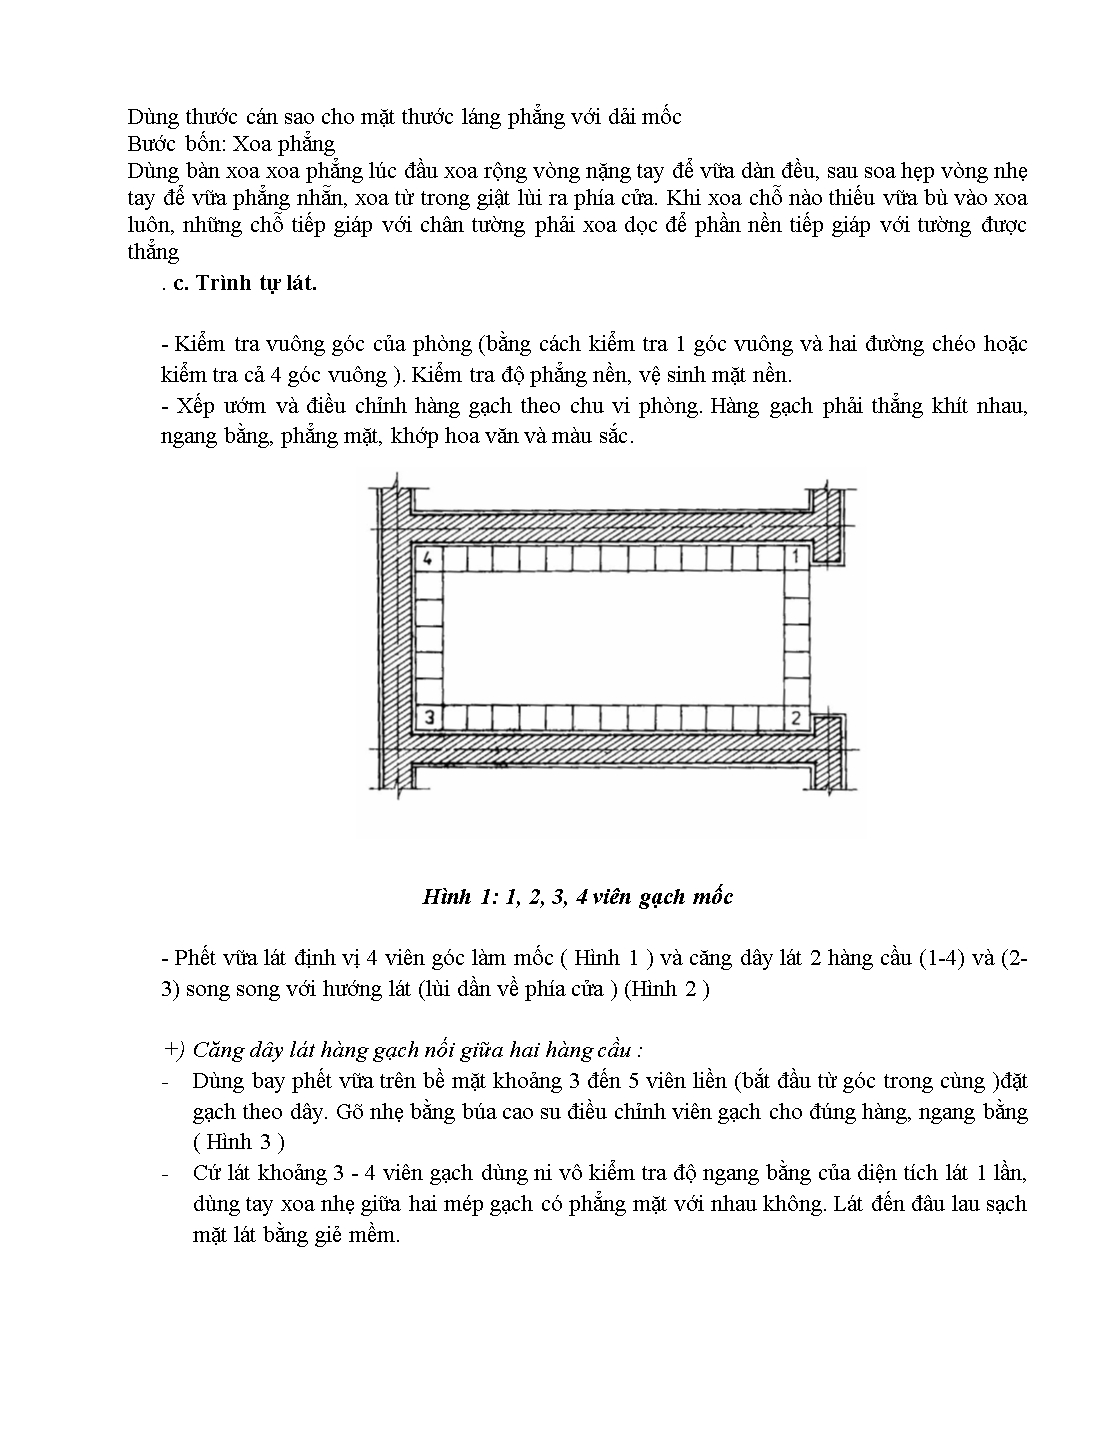 Giáo trình Kỹ thuật láng lát, nền trang 4